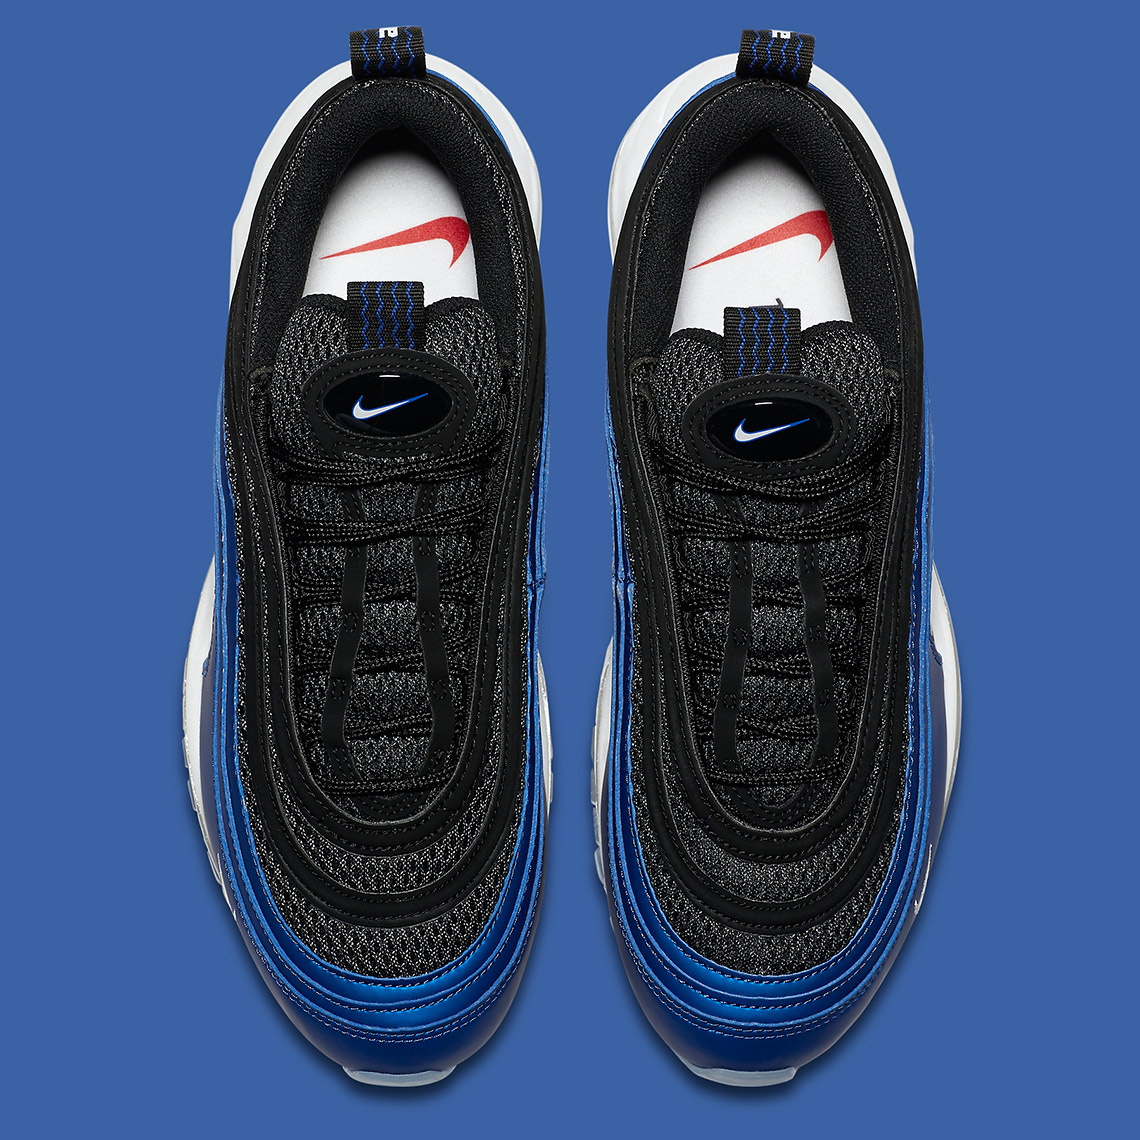 Nike Men's Air Max 97 UL '17 Basketball Shoe .com